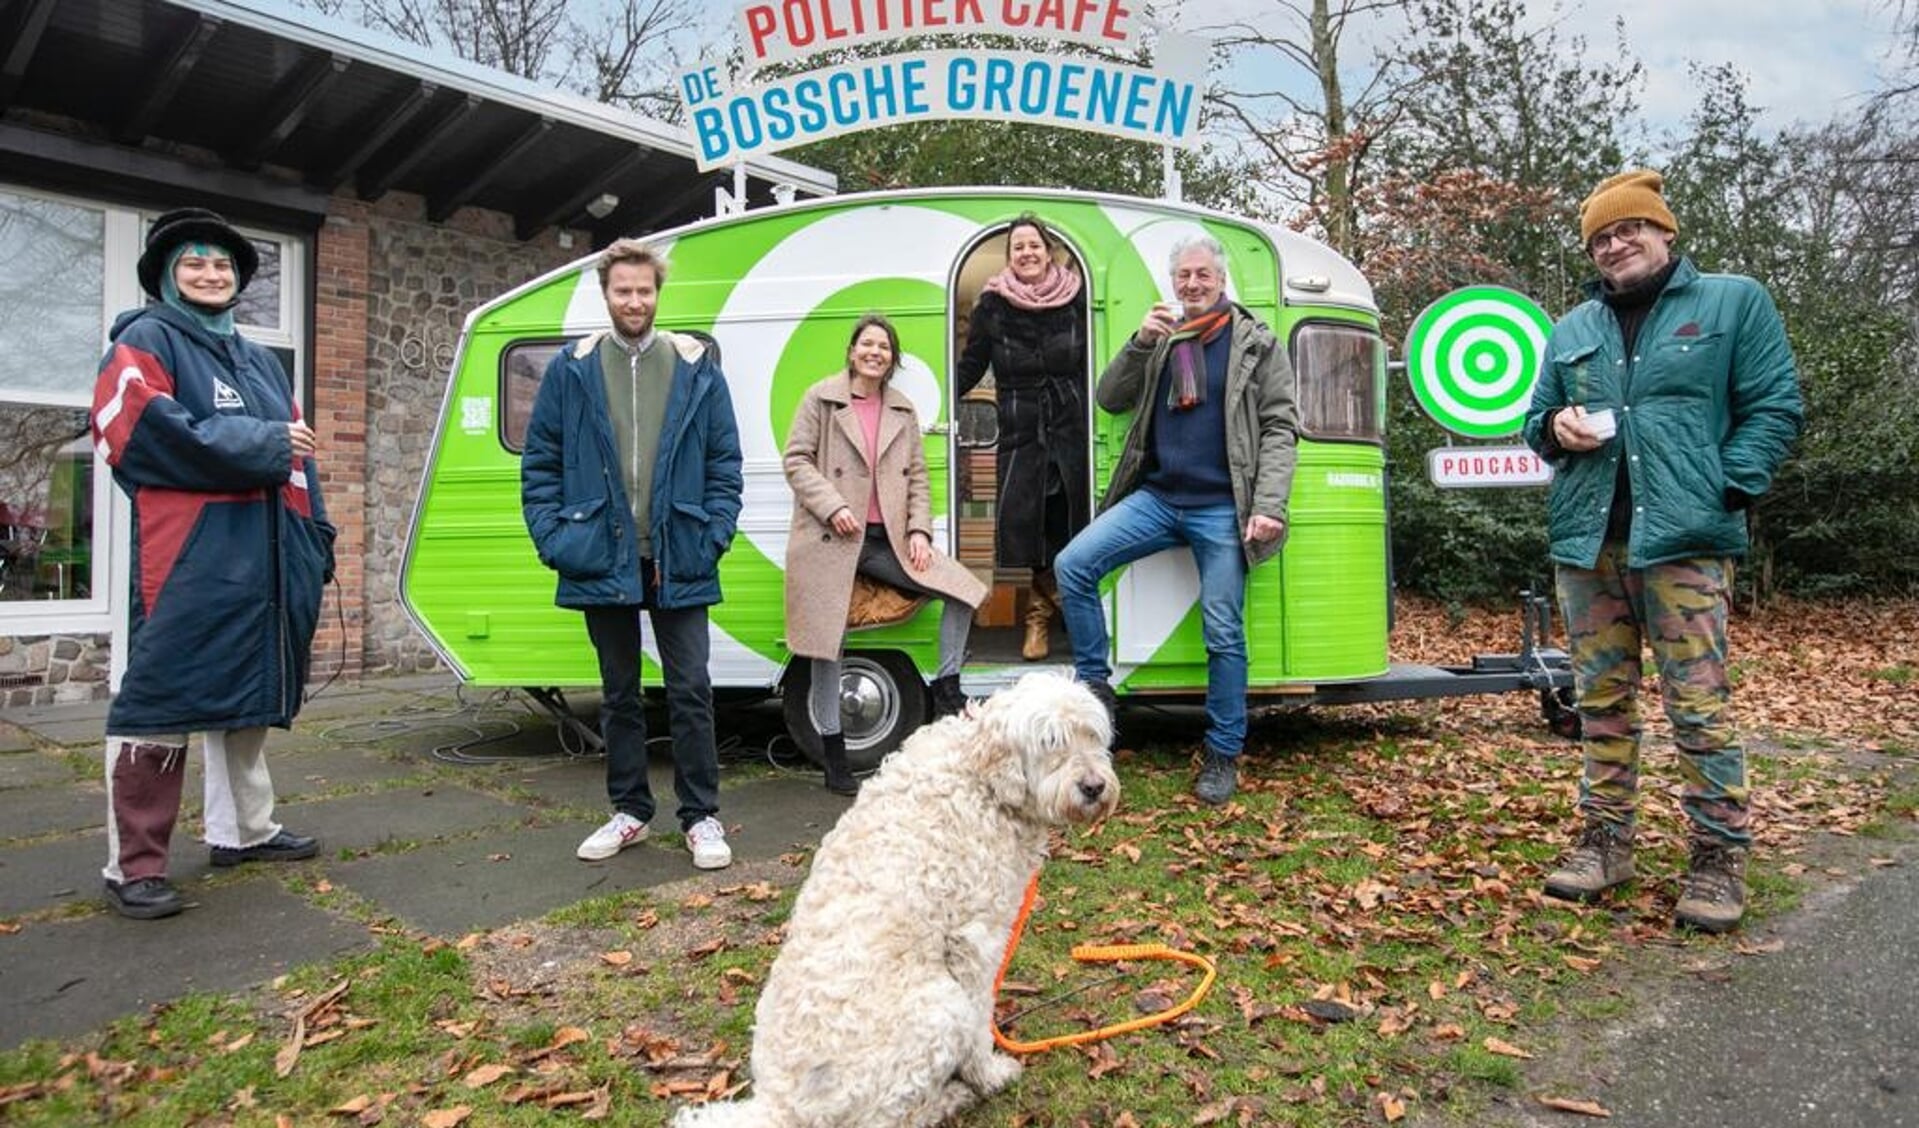 In de podcast 'Radio De Bossche Groenen' bespreken Eef van Opdorp en Judith Hendrickx lokale thema’s zoals bijvoorbeeld wonen, cultuur, klimaat of de problemen van werkende armen. 